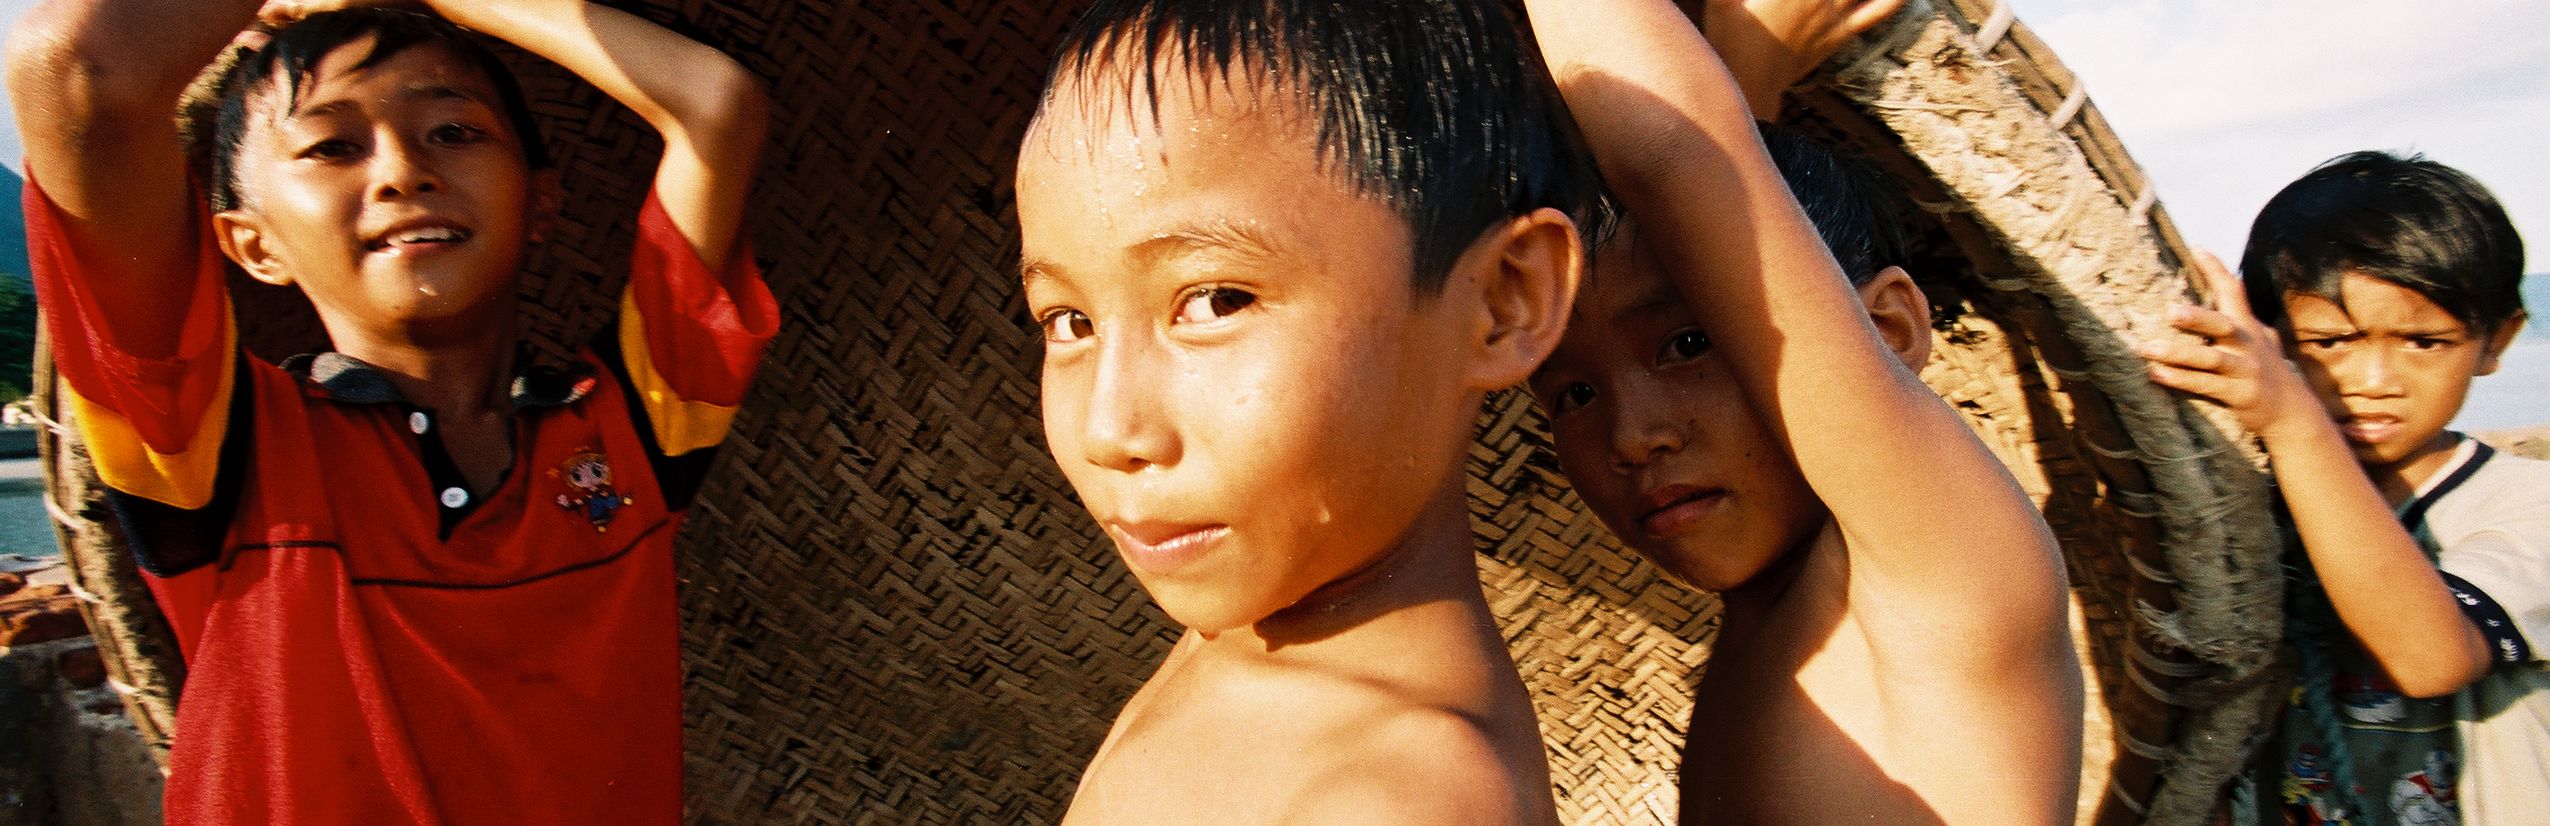 Familienreise Vietnam - einheimische Kinder